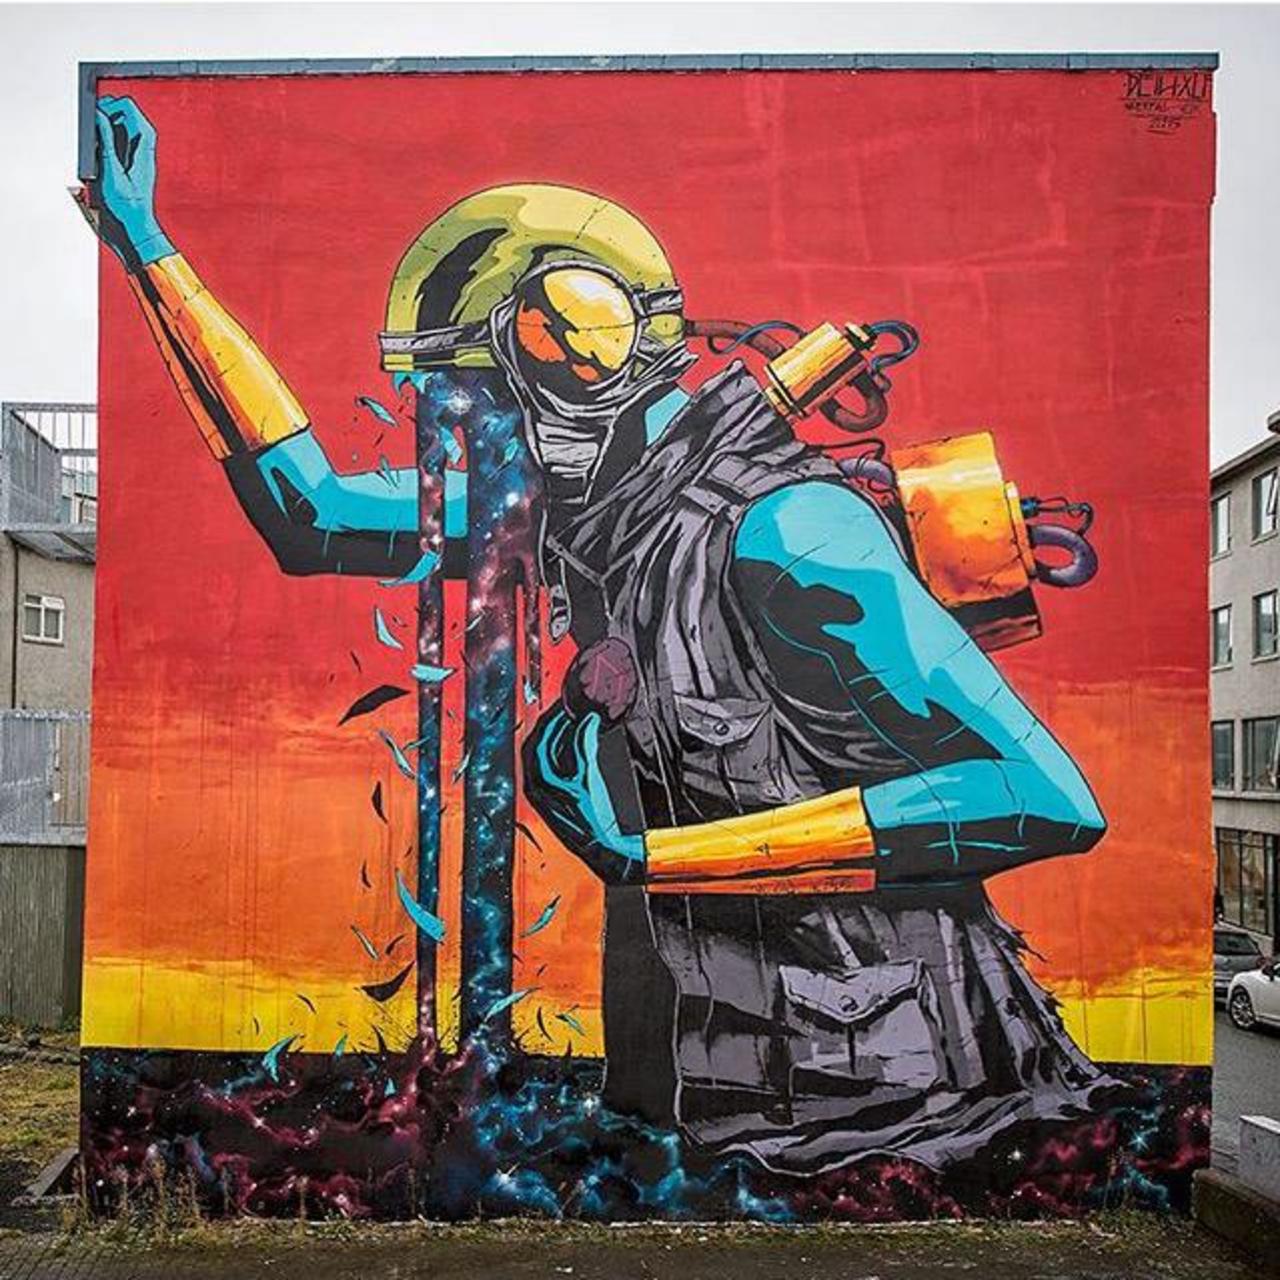 Street Art by Deih in Reykjavik 

#art #graffiti #mural #streetart https://t.co/5wYl7nuVOf